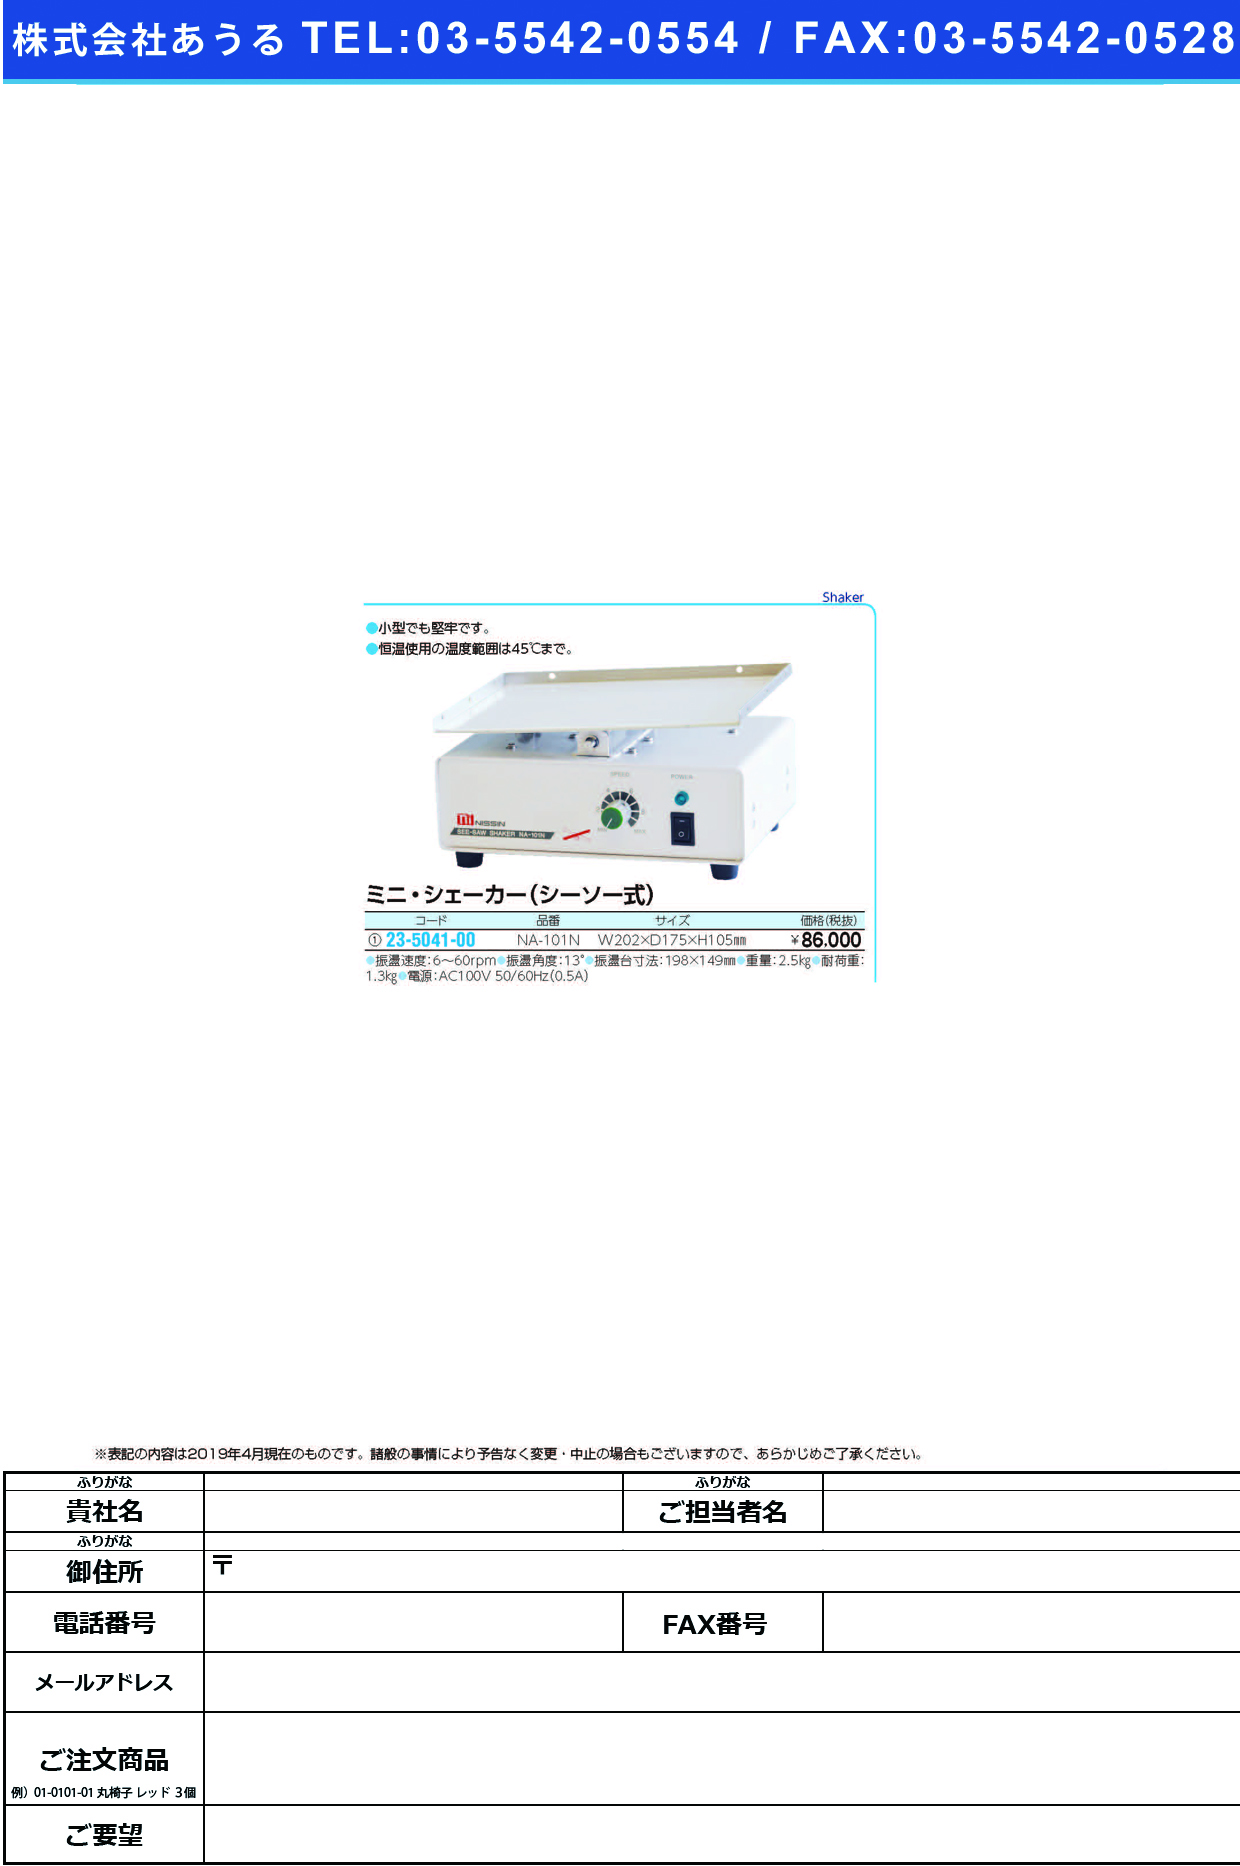 (23-5041-00)ミニ・シェーカー（シーソー式） NA-101N ﾐﾆ･ｼｪｰｶｰ(ｼｰｿｰｼｷ)【1台単位】【2019年カタログ商品】